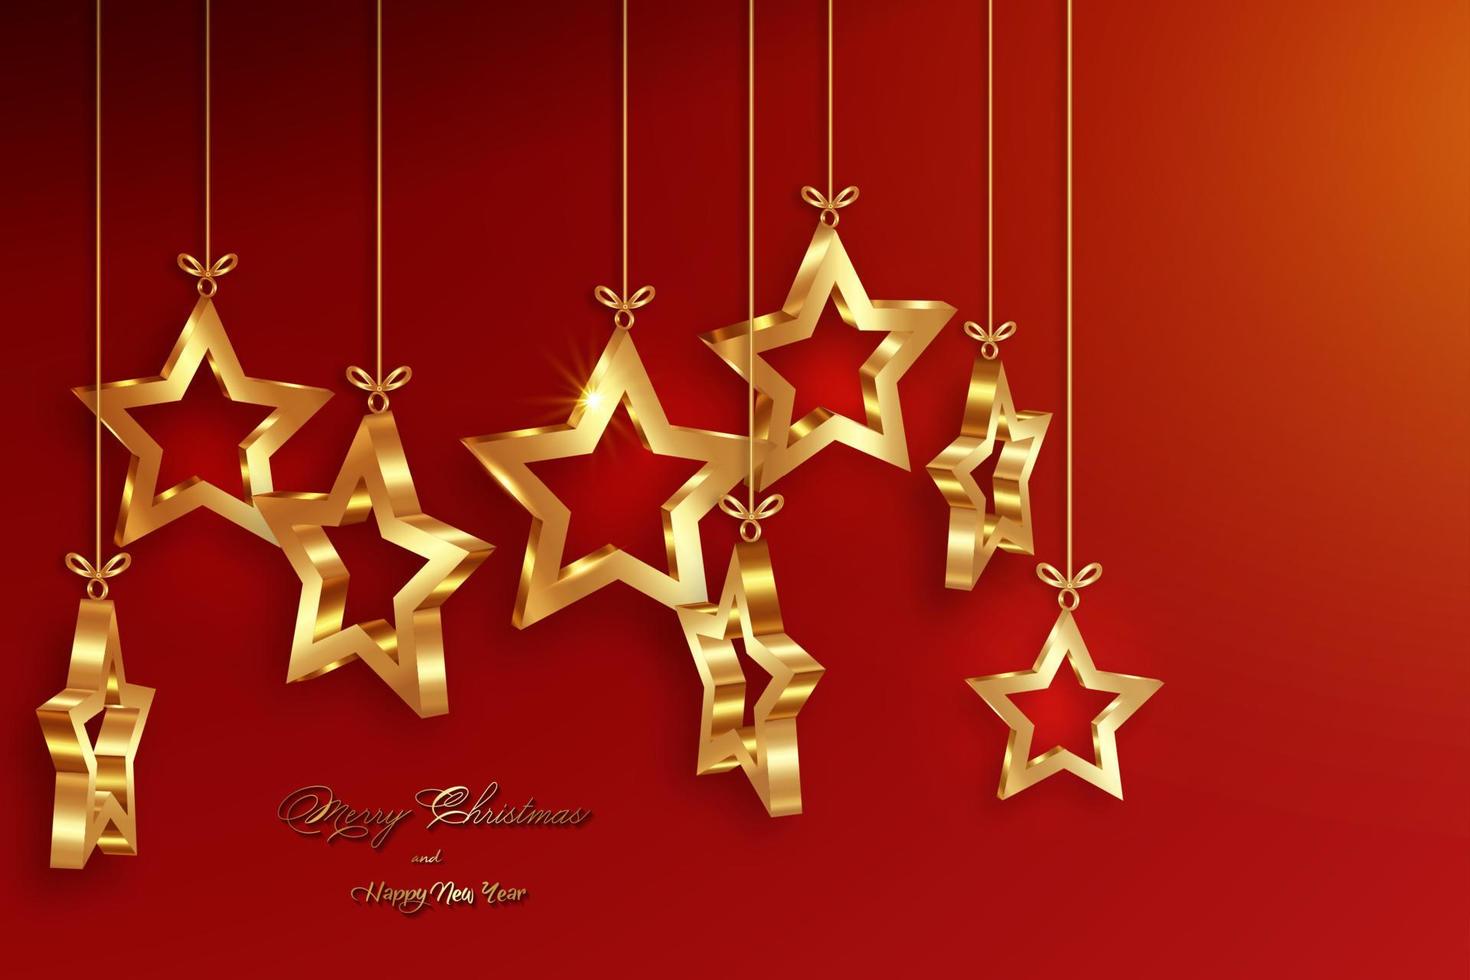 palle di natale a forma di stelle 3d, striscione per vacanze di lusso natalizio con stella d'oro incastonata, biglietto di auguri di buon natale e felice anno nuovo. illustrazione vettoriale di lusso dorato isolato su sfondo rosso